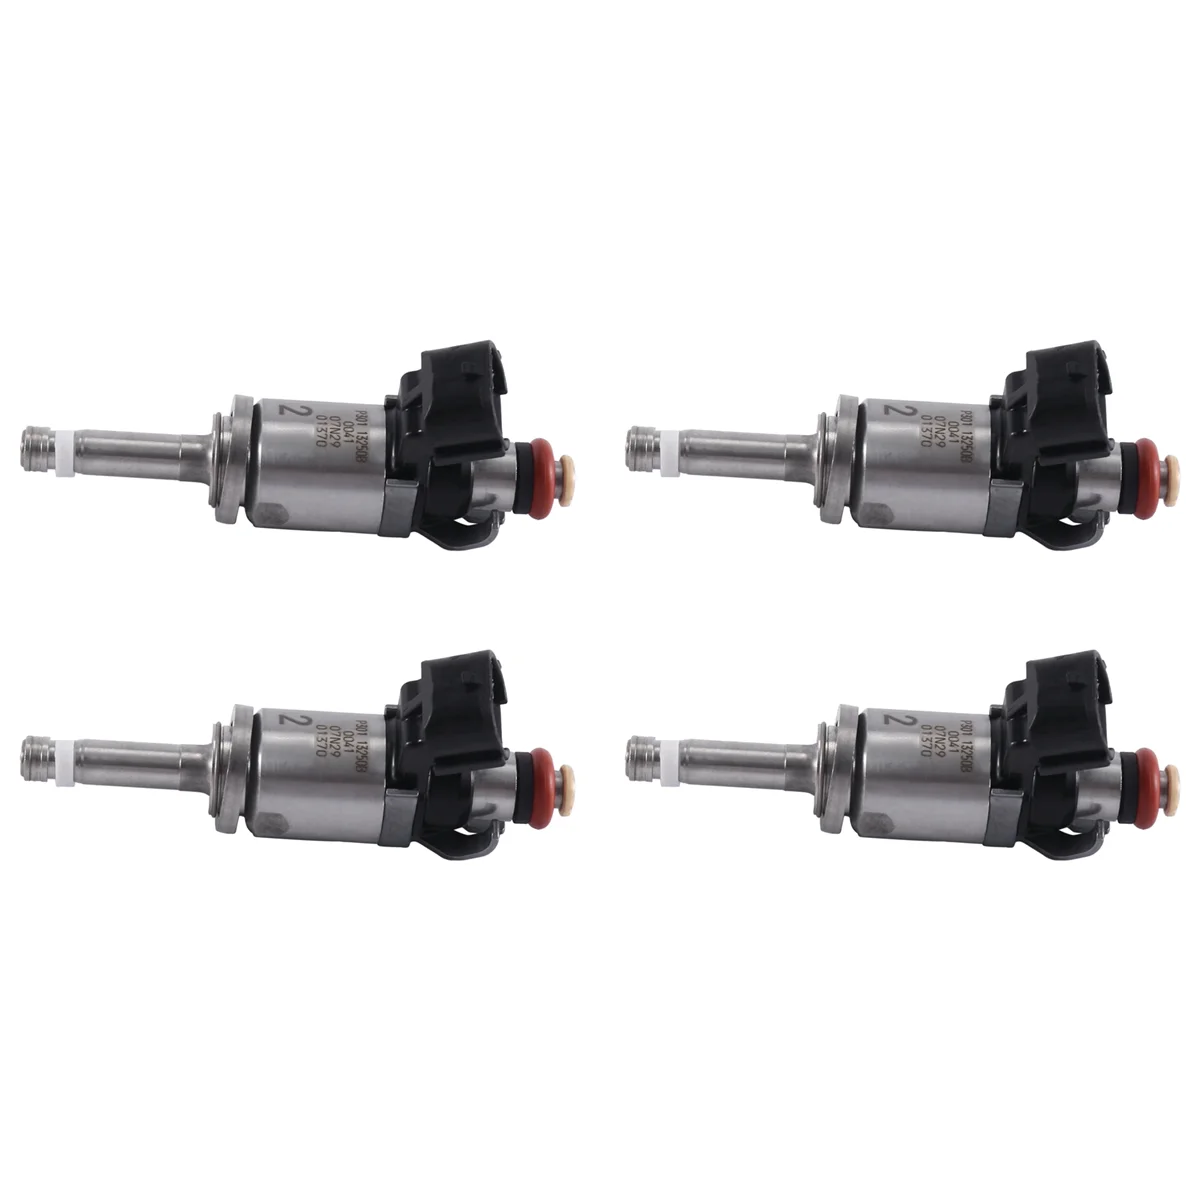 

4 Pcs Fuel Injector Nozzle P301-13250B P30113250B for Mazda 2 3 CX-3 CX-5 MX-5 2.0